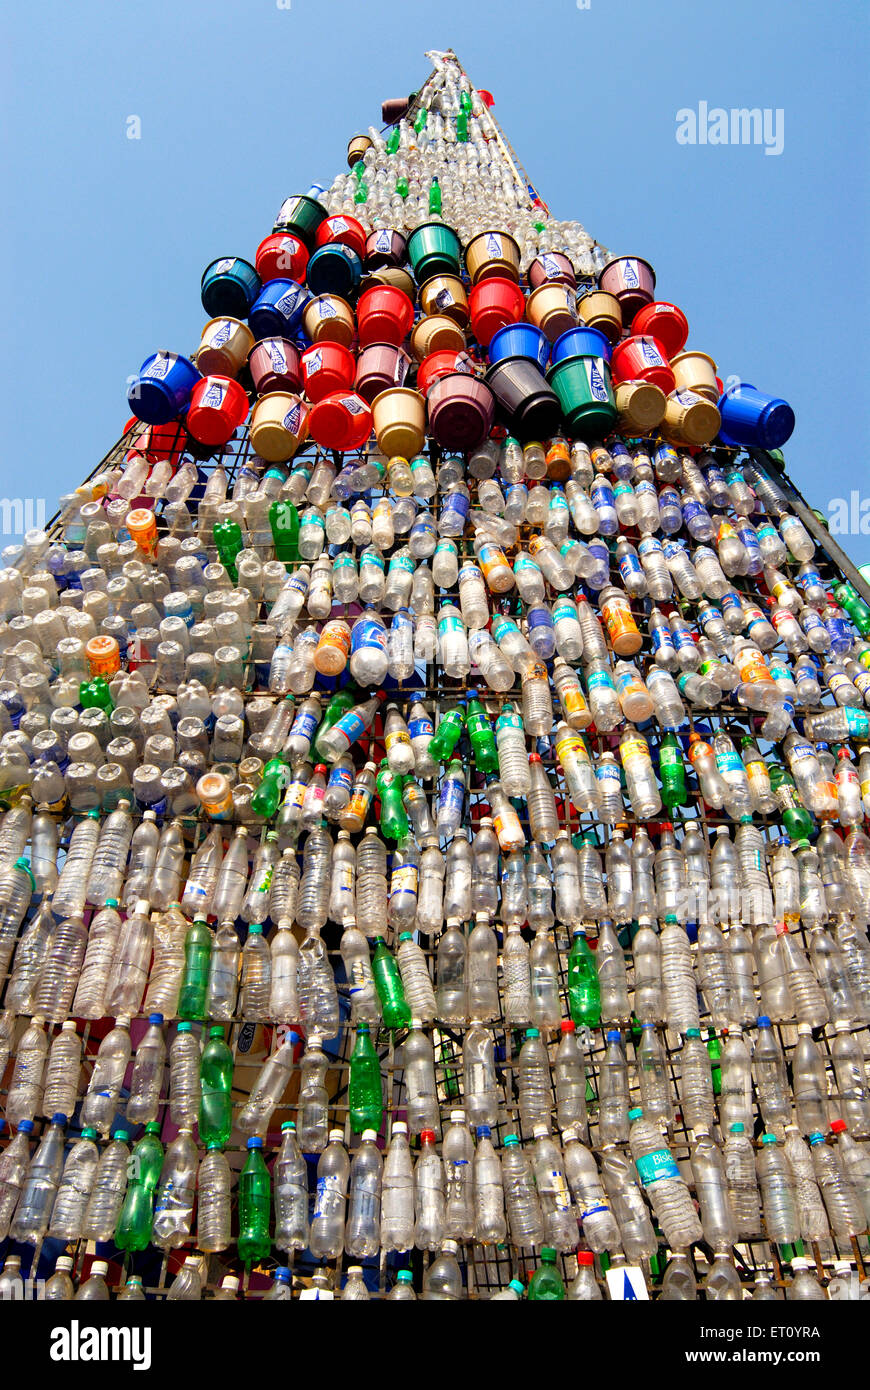 Les bouteilles en plastique et des seaux de conservation de l'eau thème Kala Ghoda art festival Bombay Mumbai maharashtra inde Banque D'Images